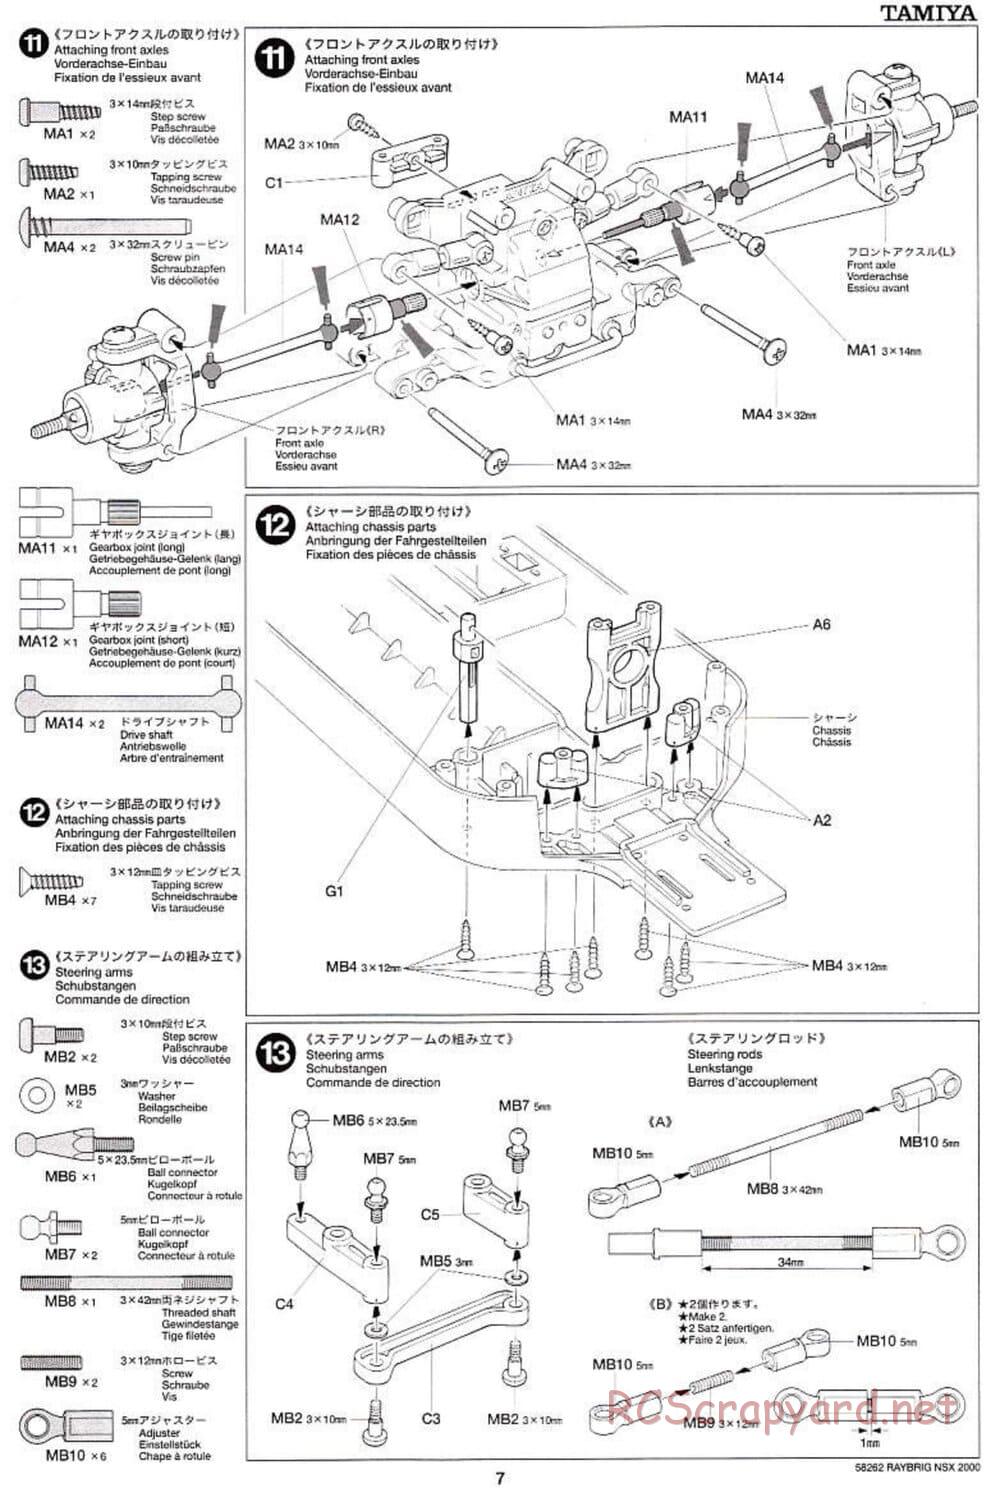 Tamiya - Raybrig NSX 2000 - TB-01 Chassis - Manual - Page 7